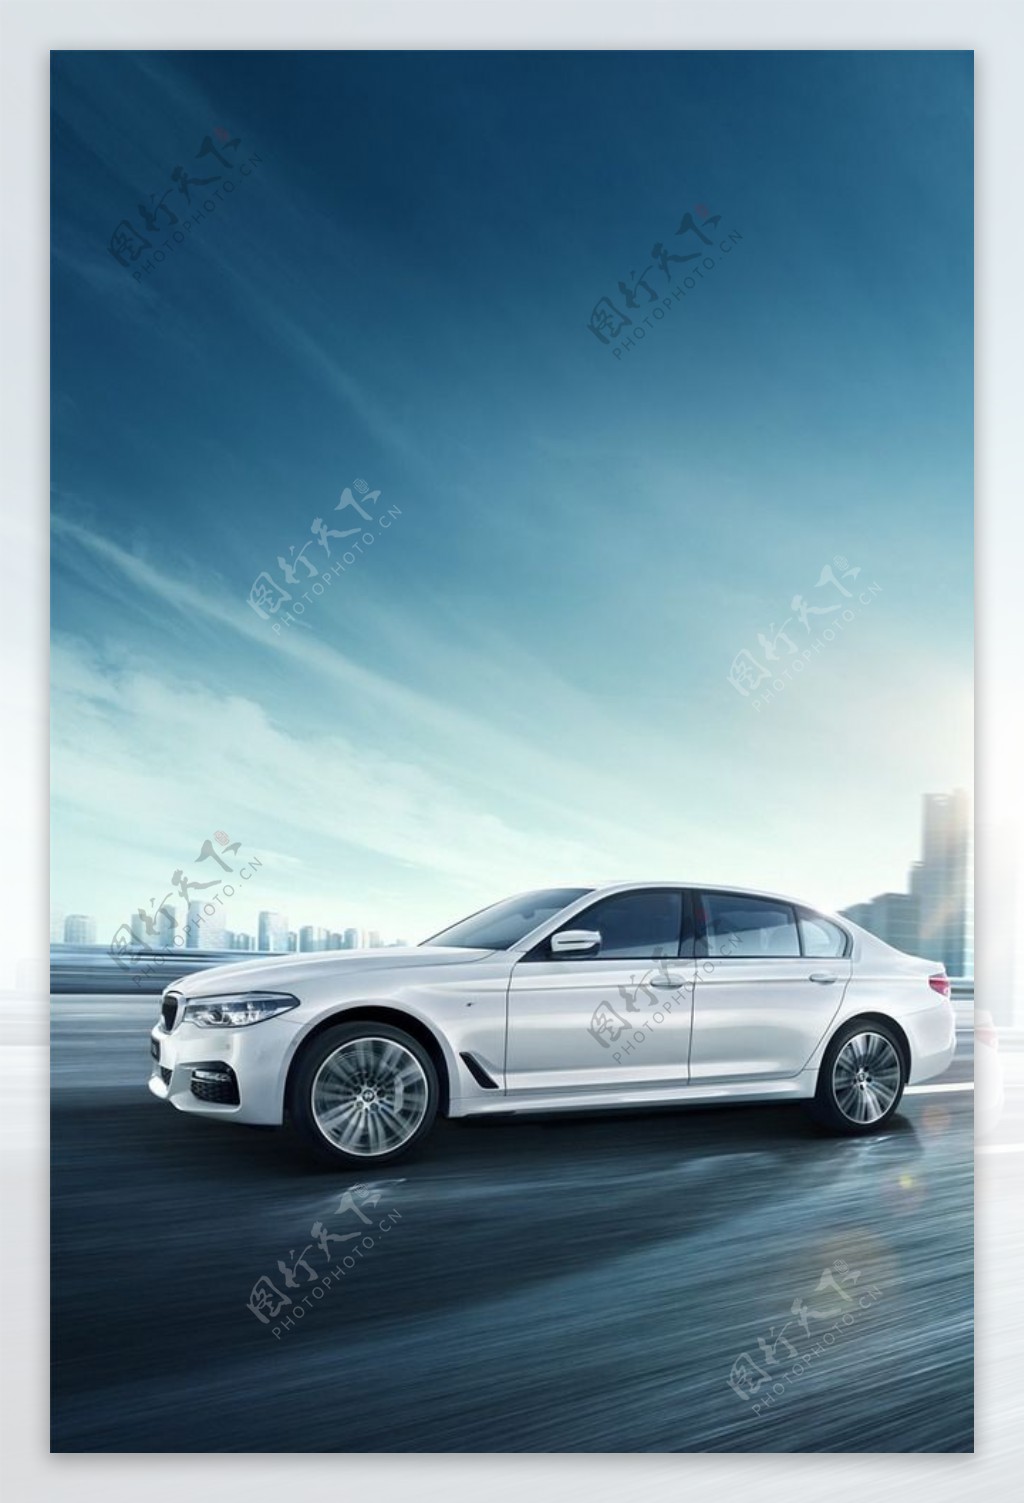 全新BMW5系Li